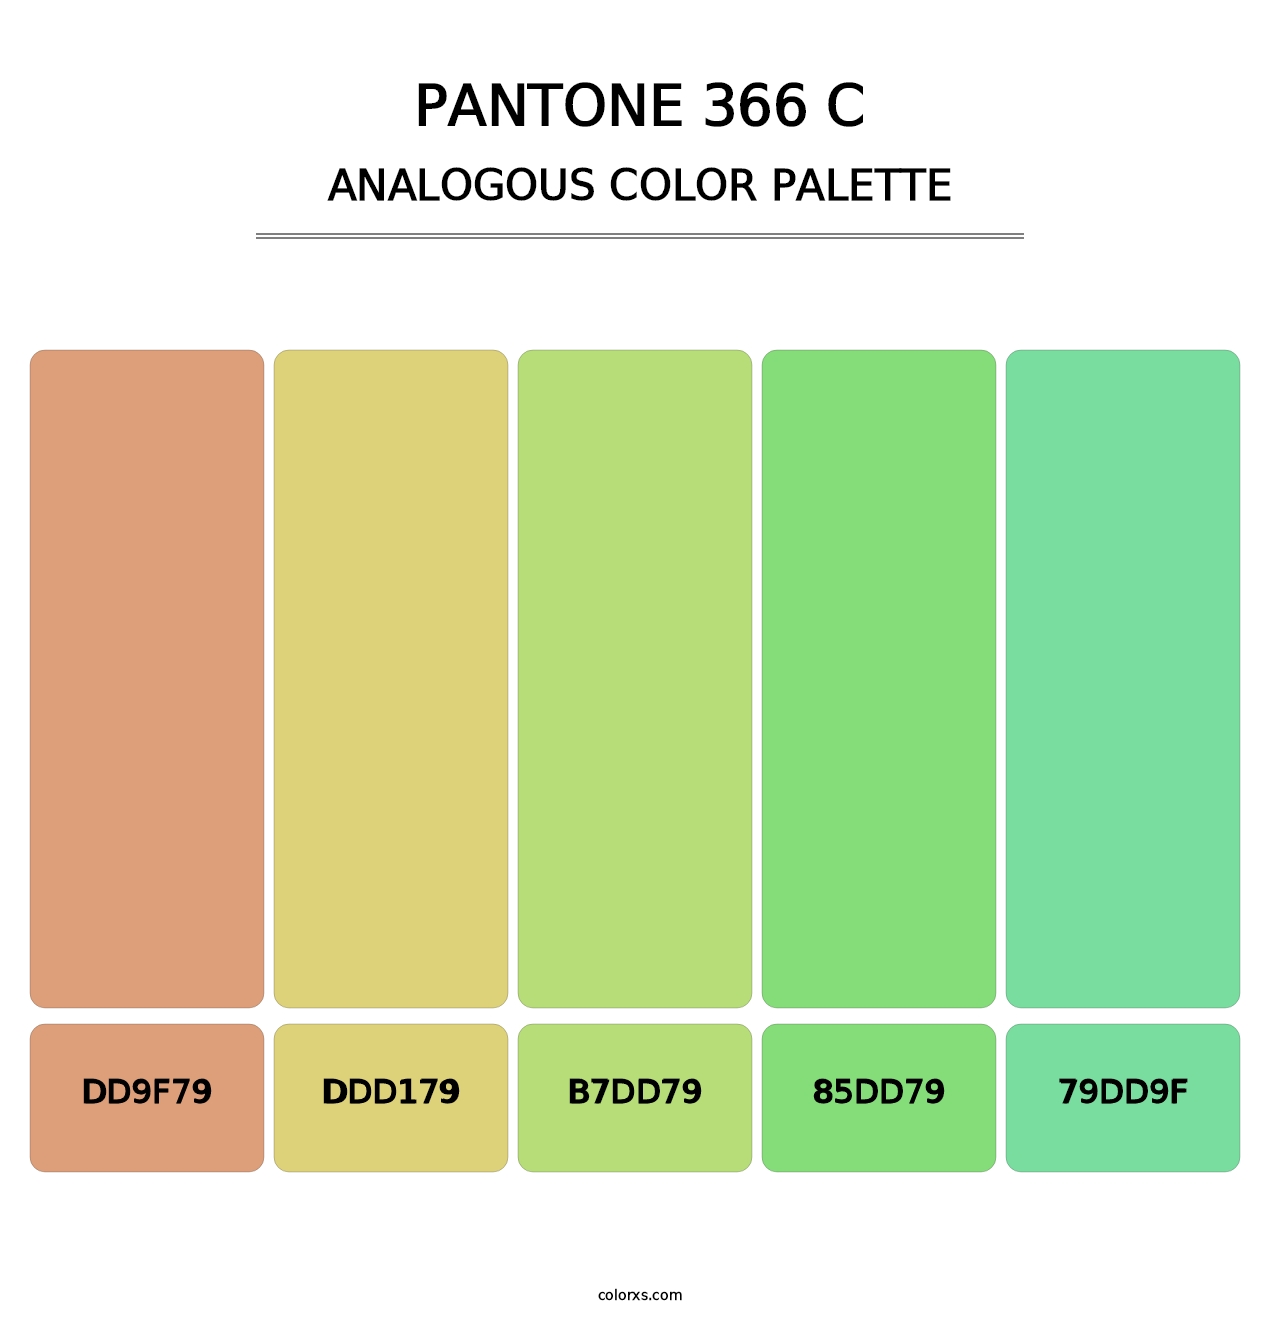 PANTONE 366 C - Analogous Color Palette